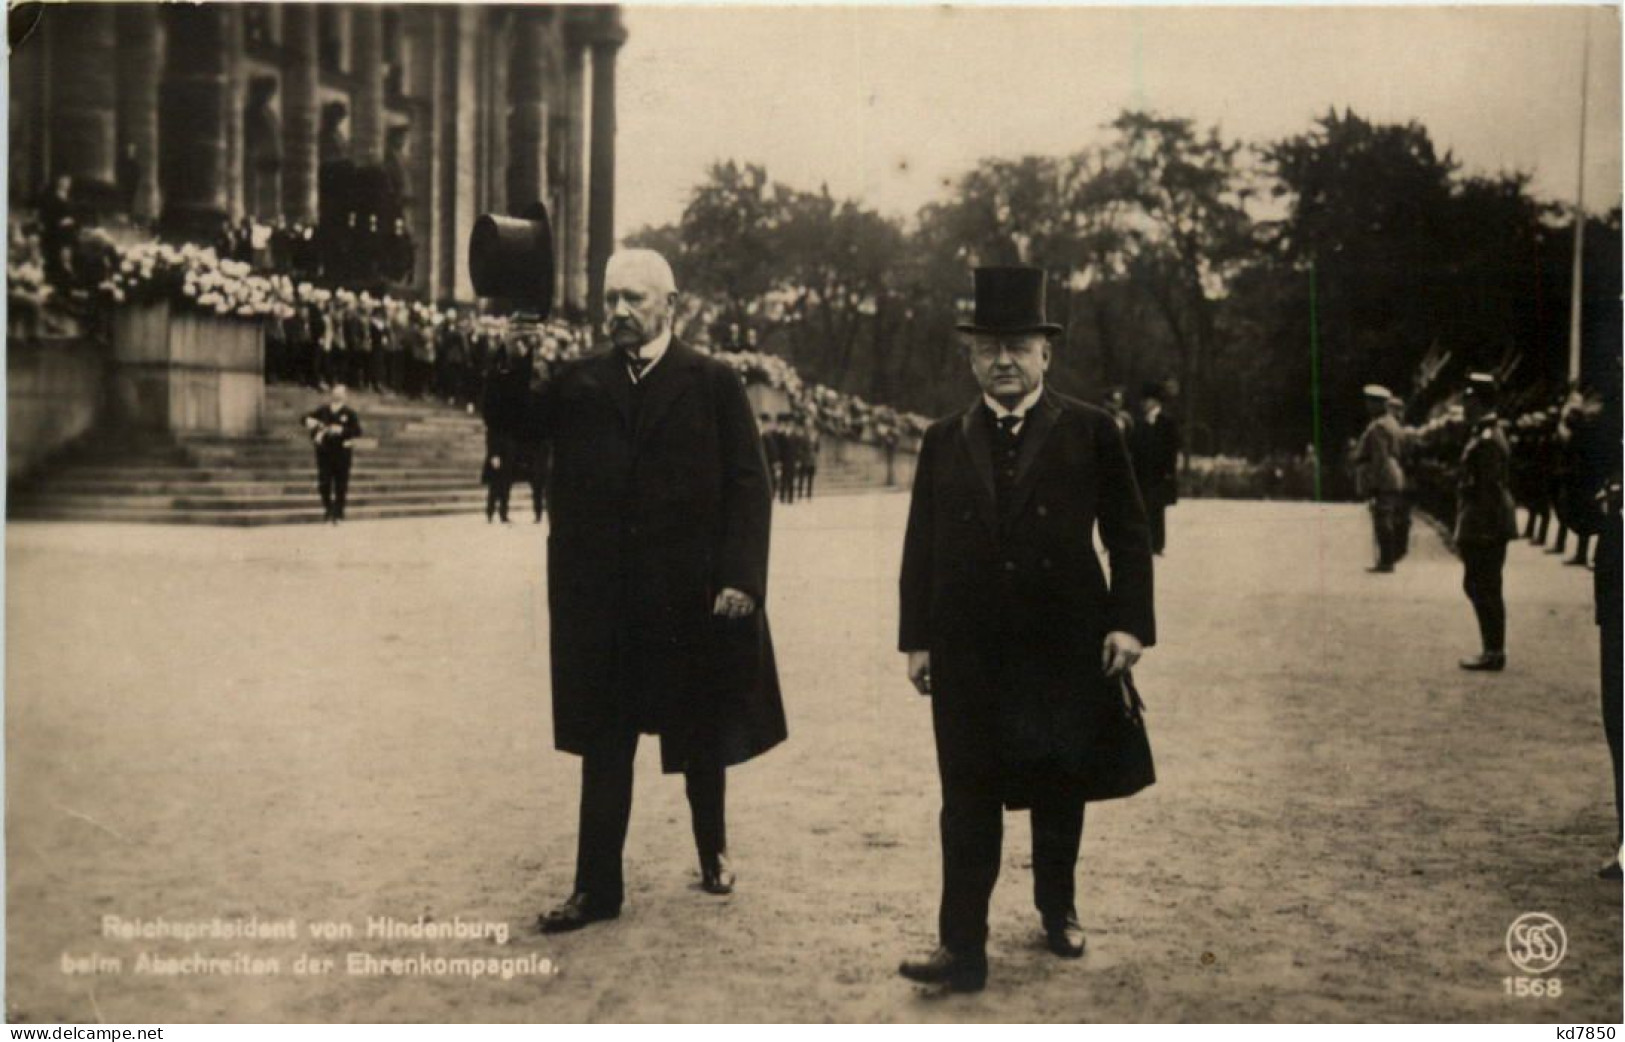 Reichspräsident Von Hindenburg Beim Abschreiten Der Ehrenkompagnie - Persönlichkeiten